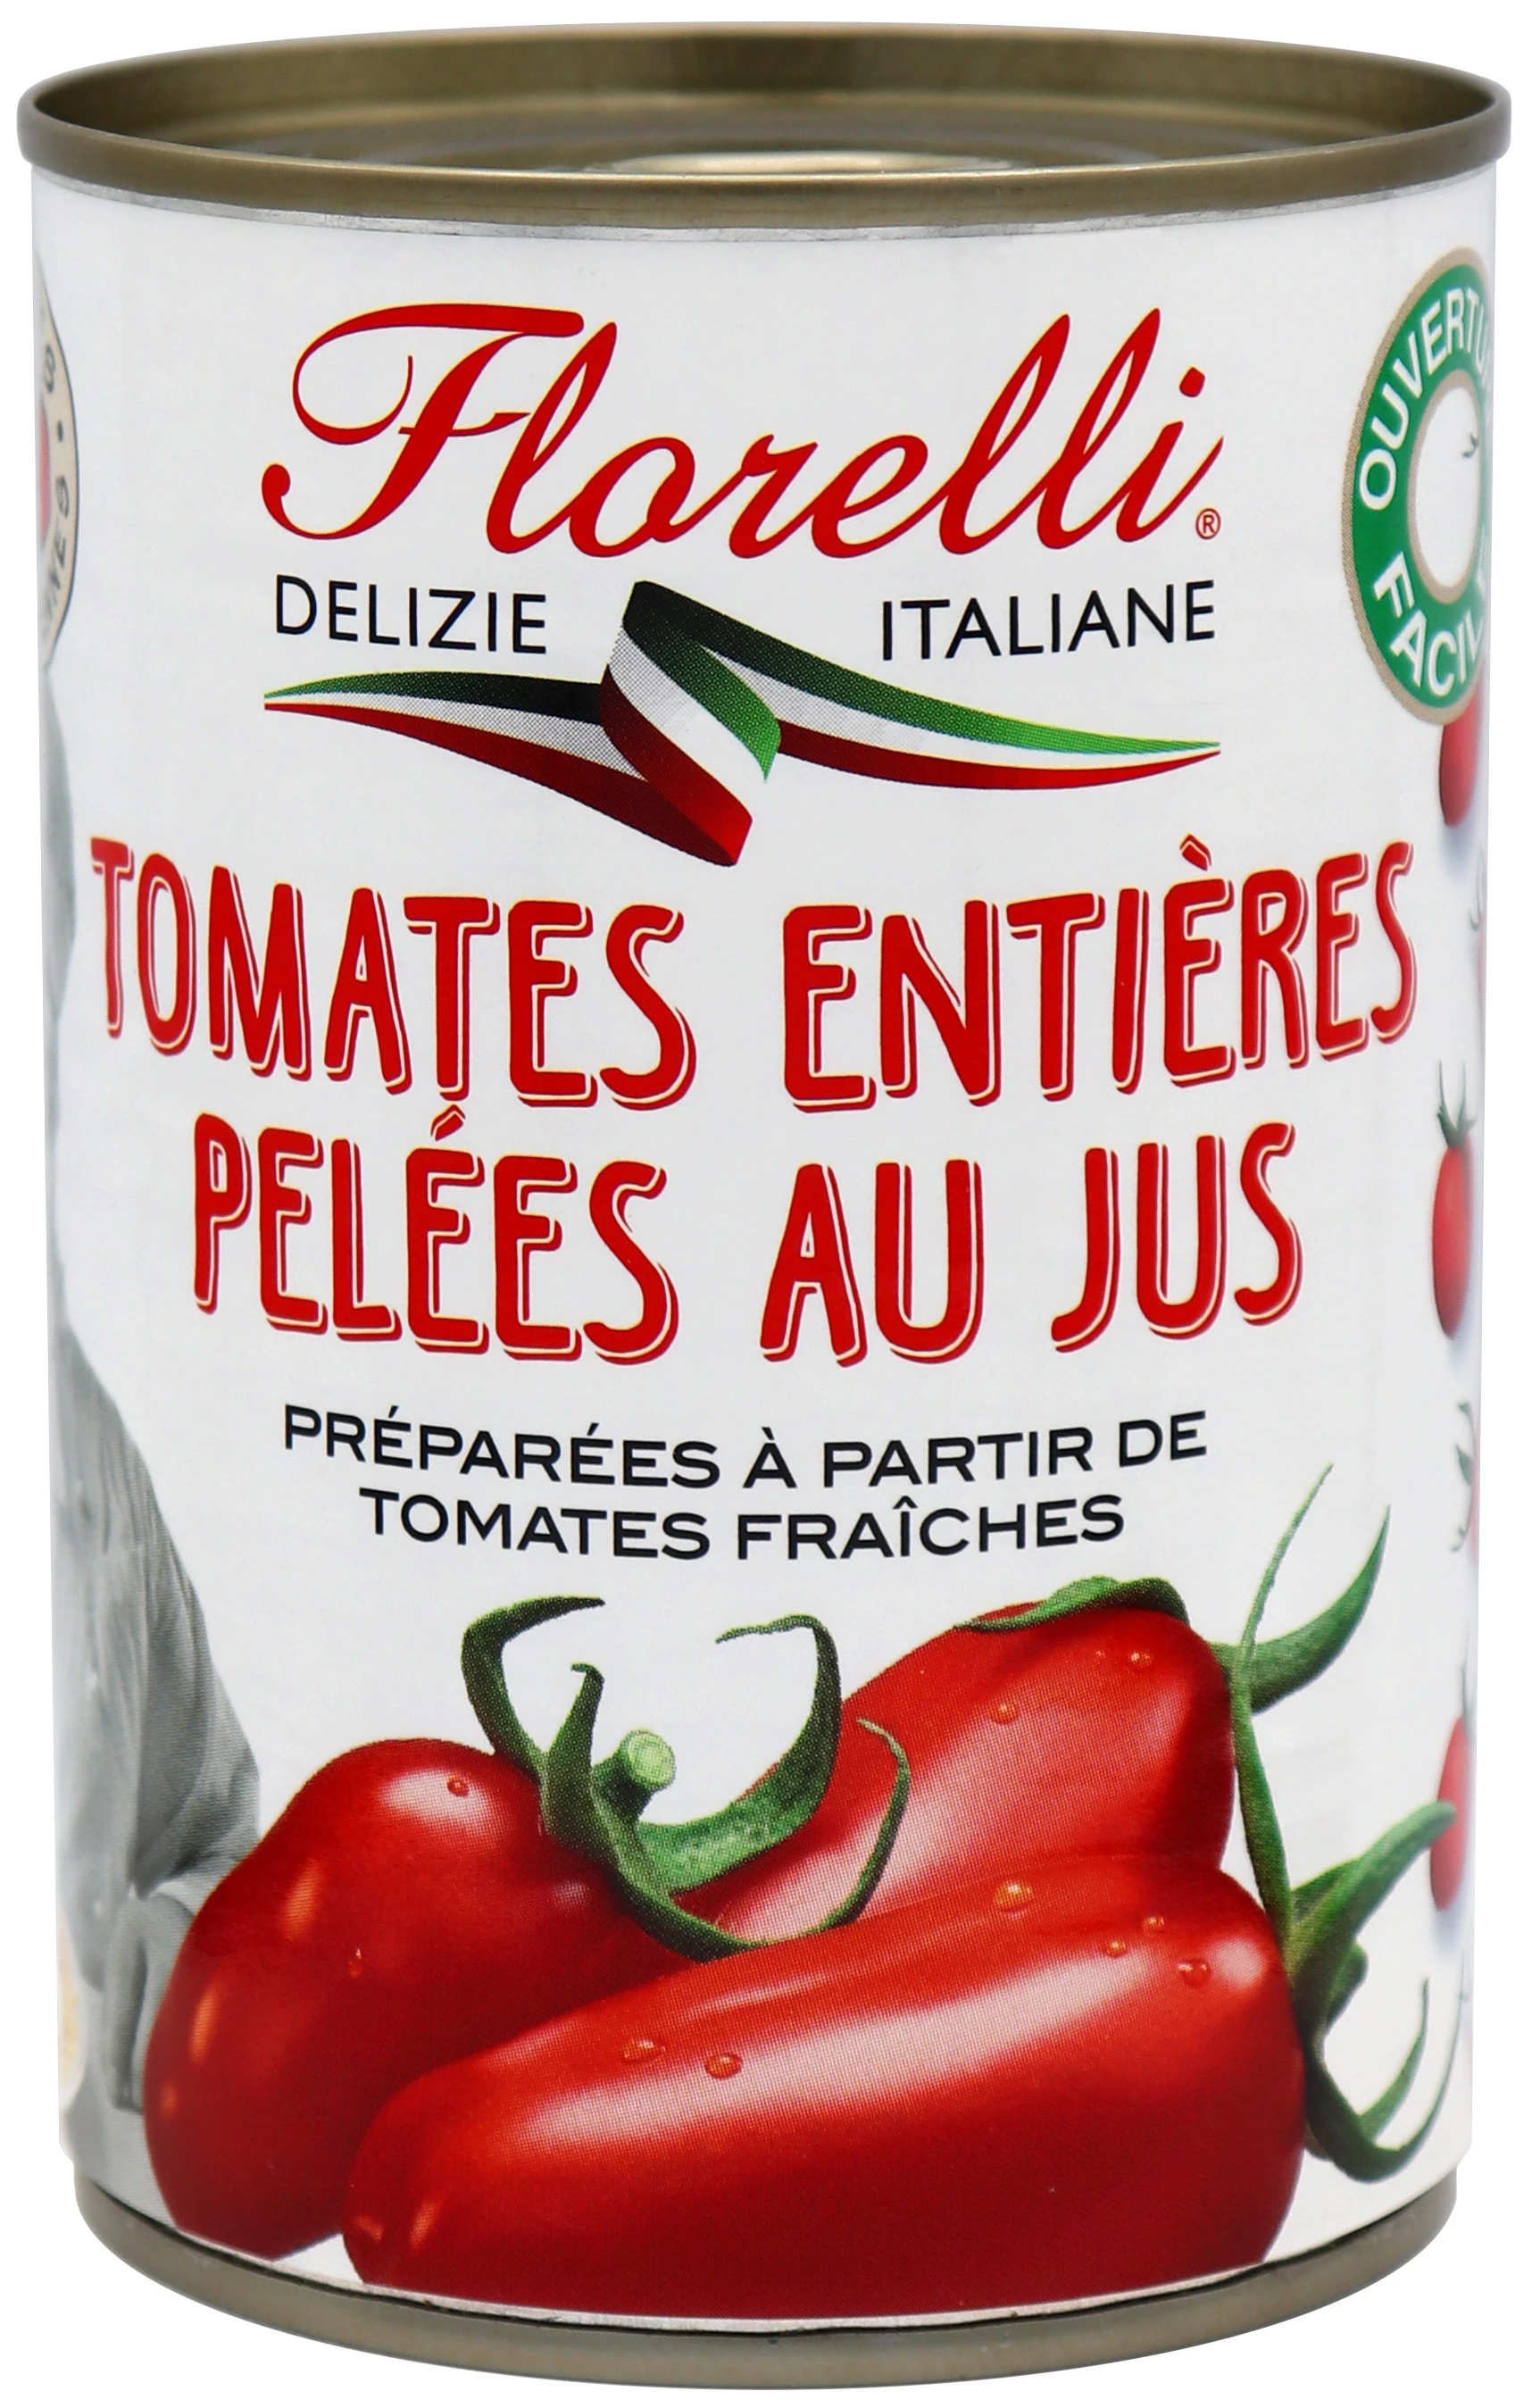 Tomates Enteros Pelados en Jugo, 400g - SAINT ELOI